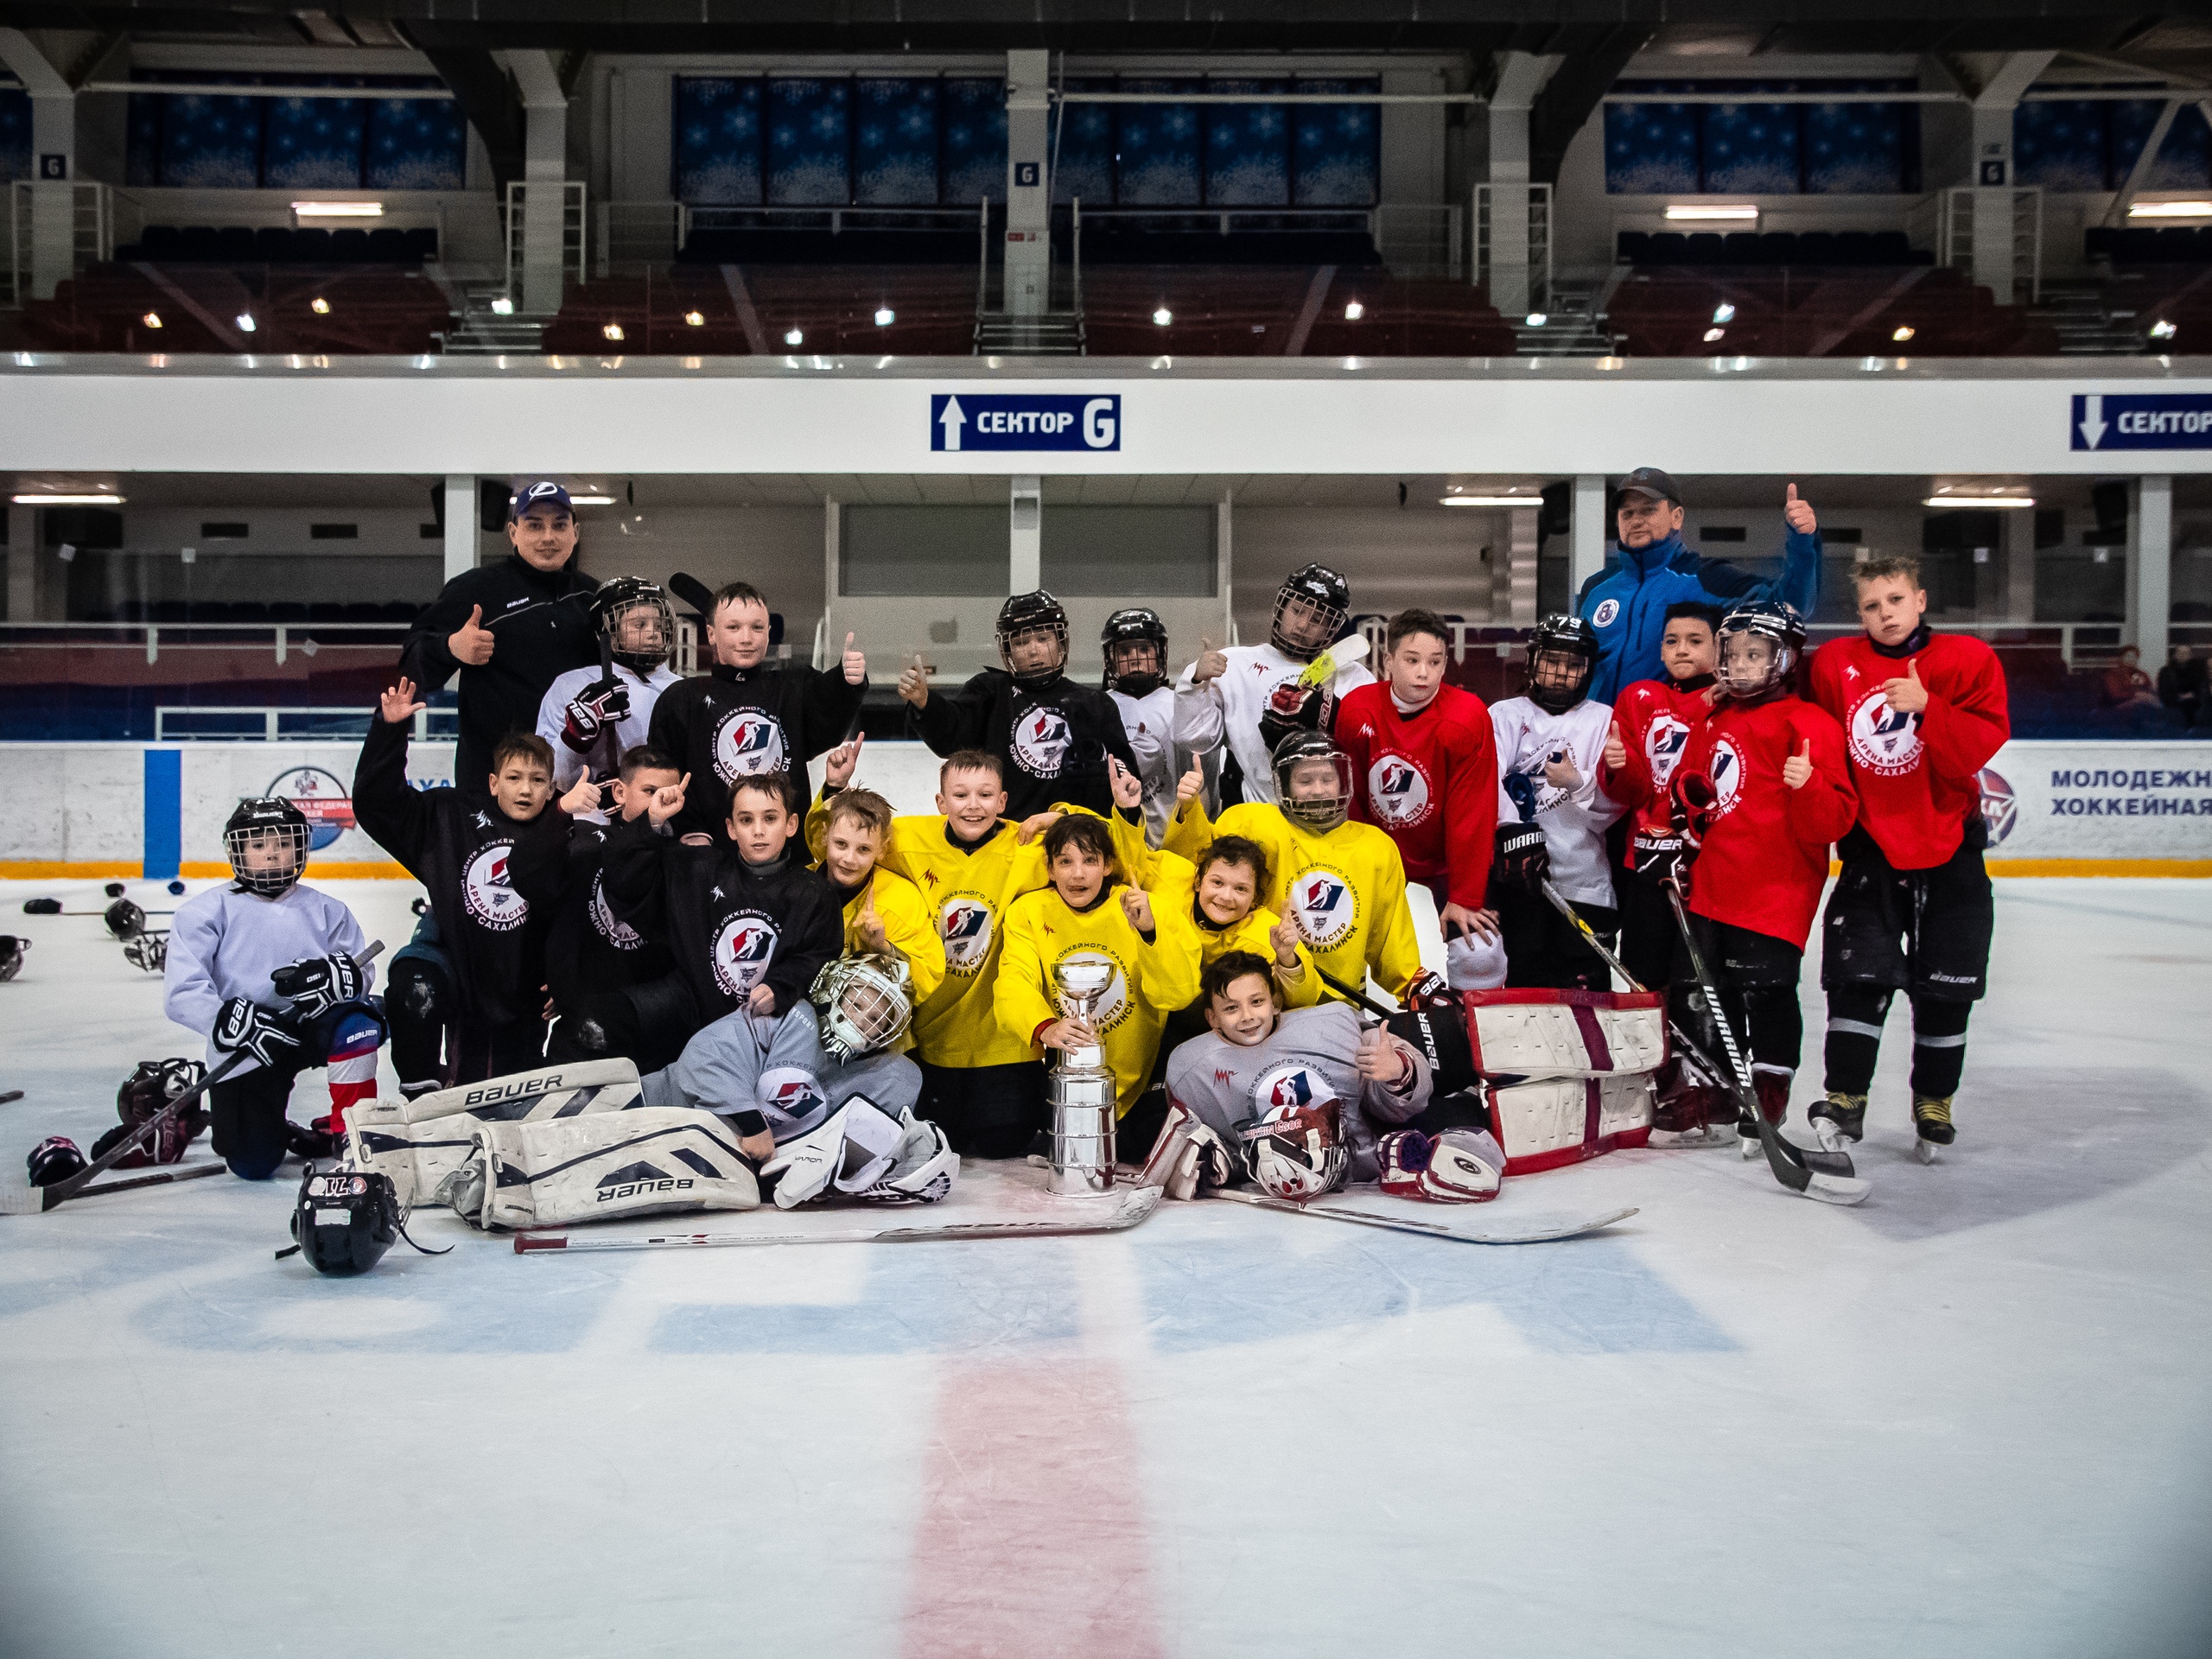 Частный хоккей в России и бизнес-путь в Китае – интервью с основателем центров хоккейного развития «Арена Мастер»